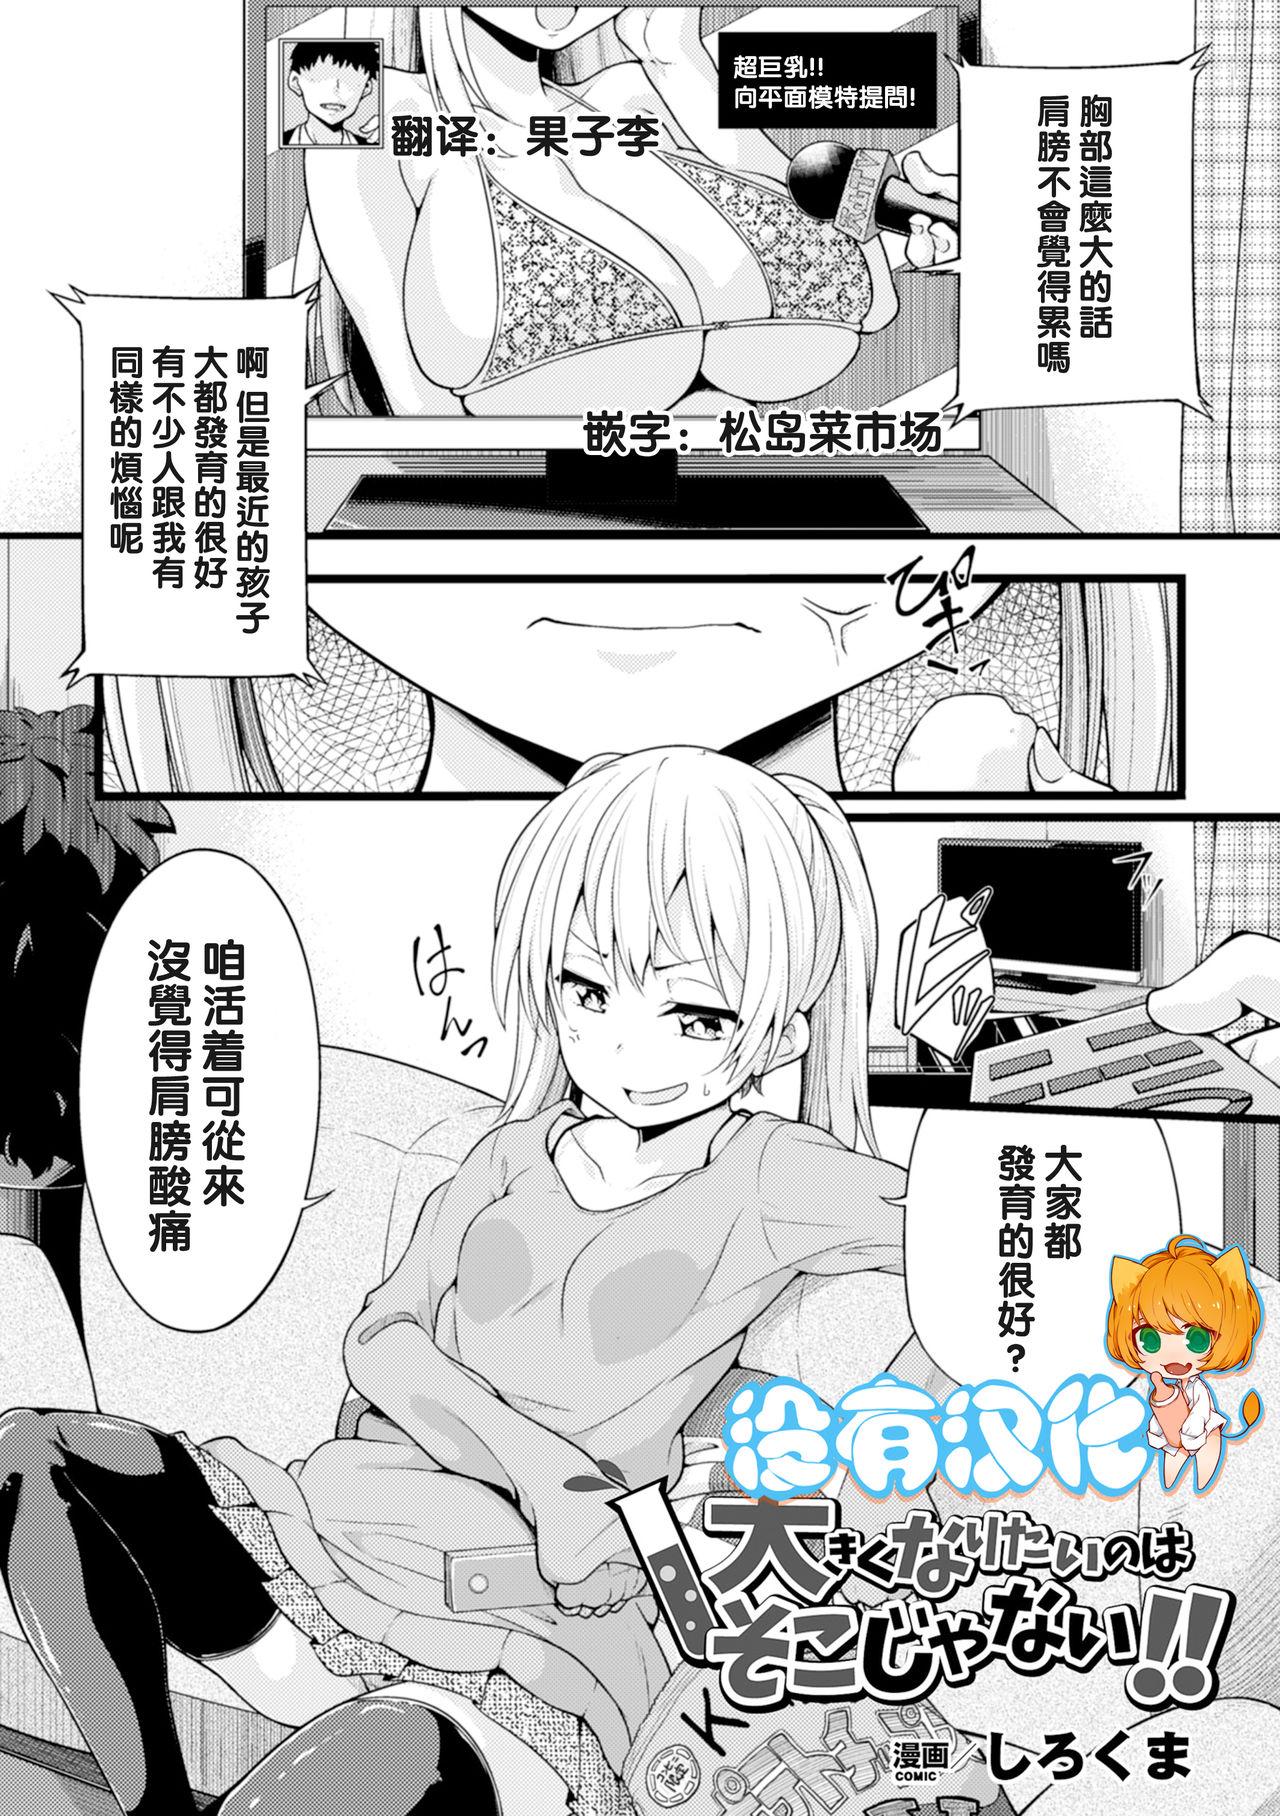 Piroca Ookiku Naritai no wa Soko janai!! Sexcams - Picture 1